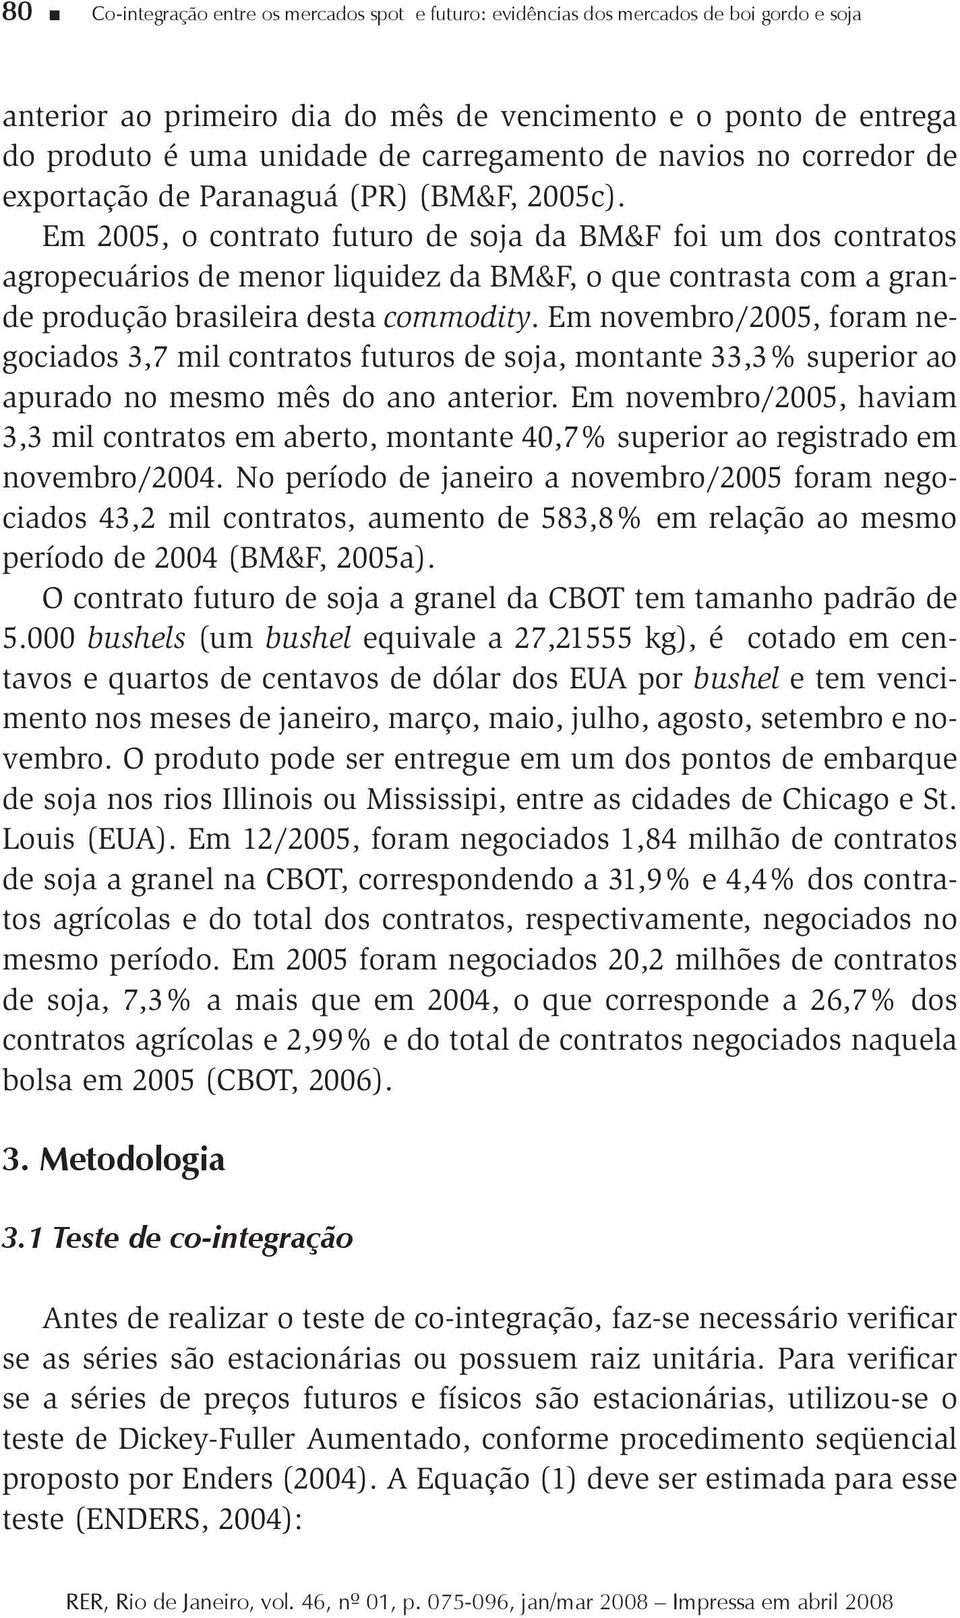 Em 2005, o contrato futuro de soja da BM&F foi um dos contratos agropecuários de menor liquidez da BM&F, o que contrasta com a grande produção brasileira desta commodity.